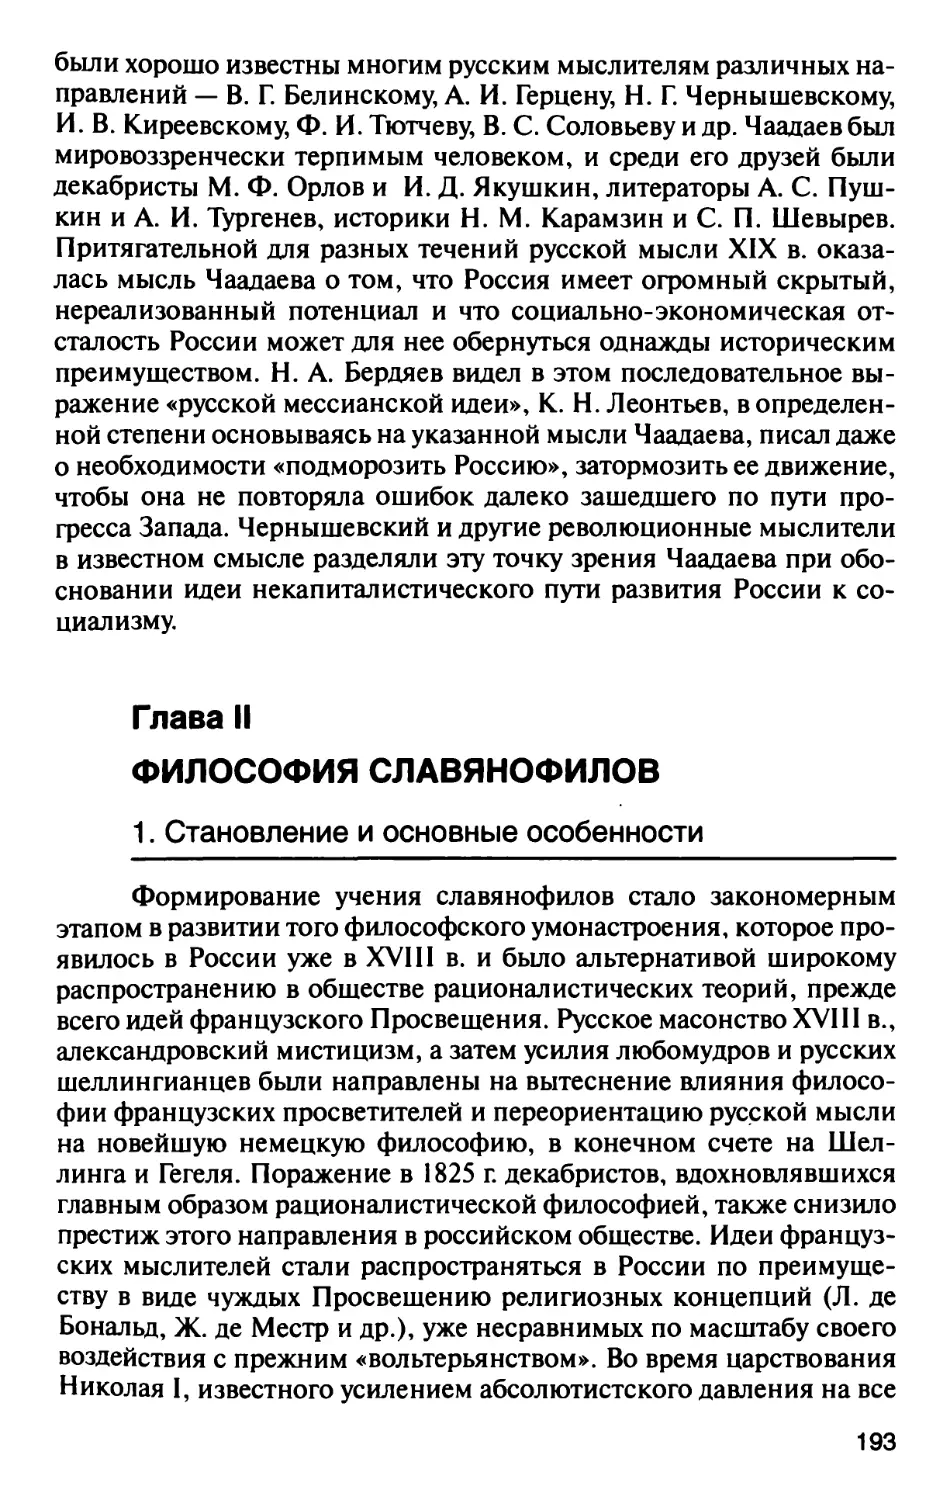 Глава II. Философия славянофилов.